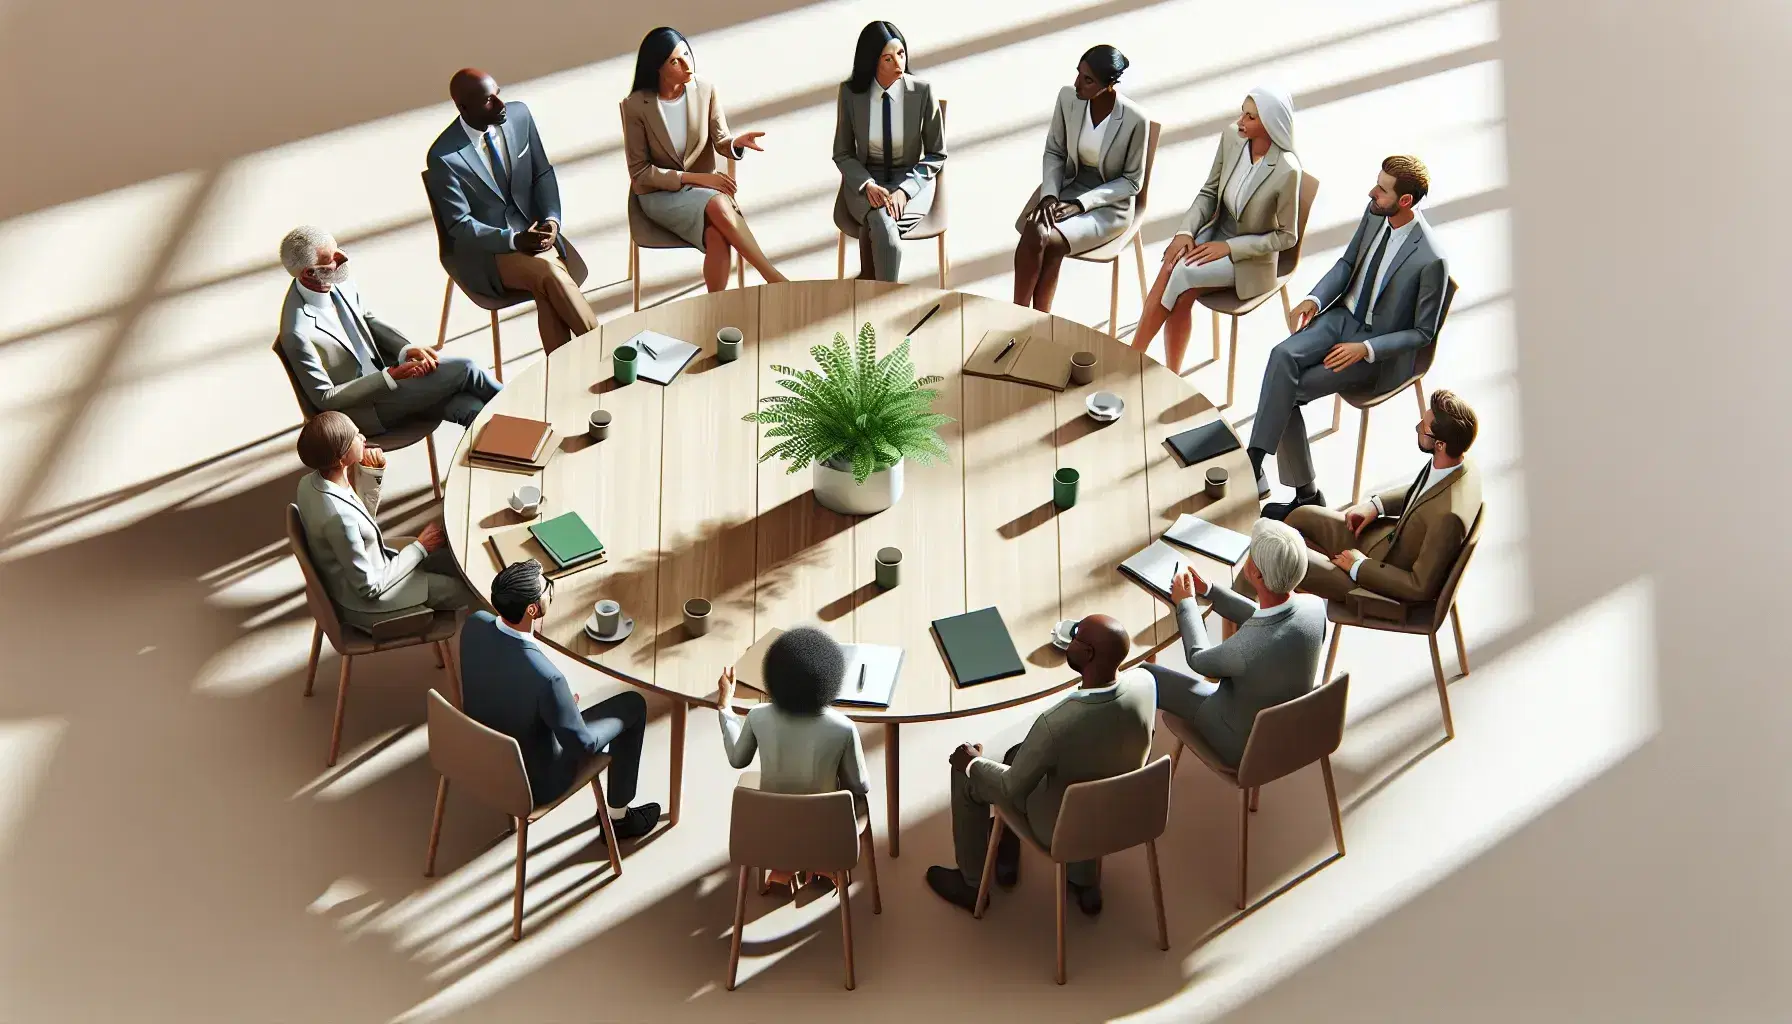 Grupo diverso de profesionales en reunión alrededor de una mesa redonda con una planta verde, en un ambiente de oficina acogedor y bien iluminado.